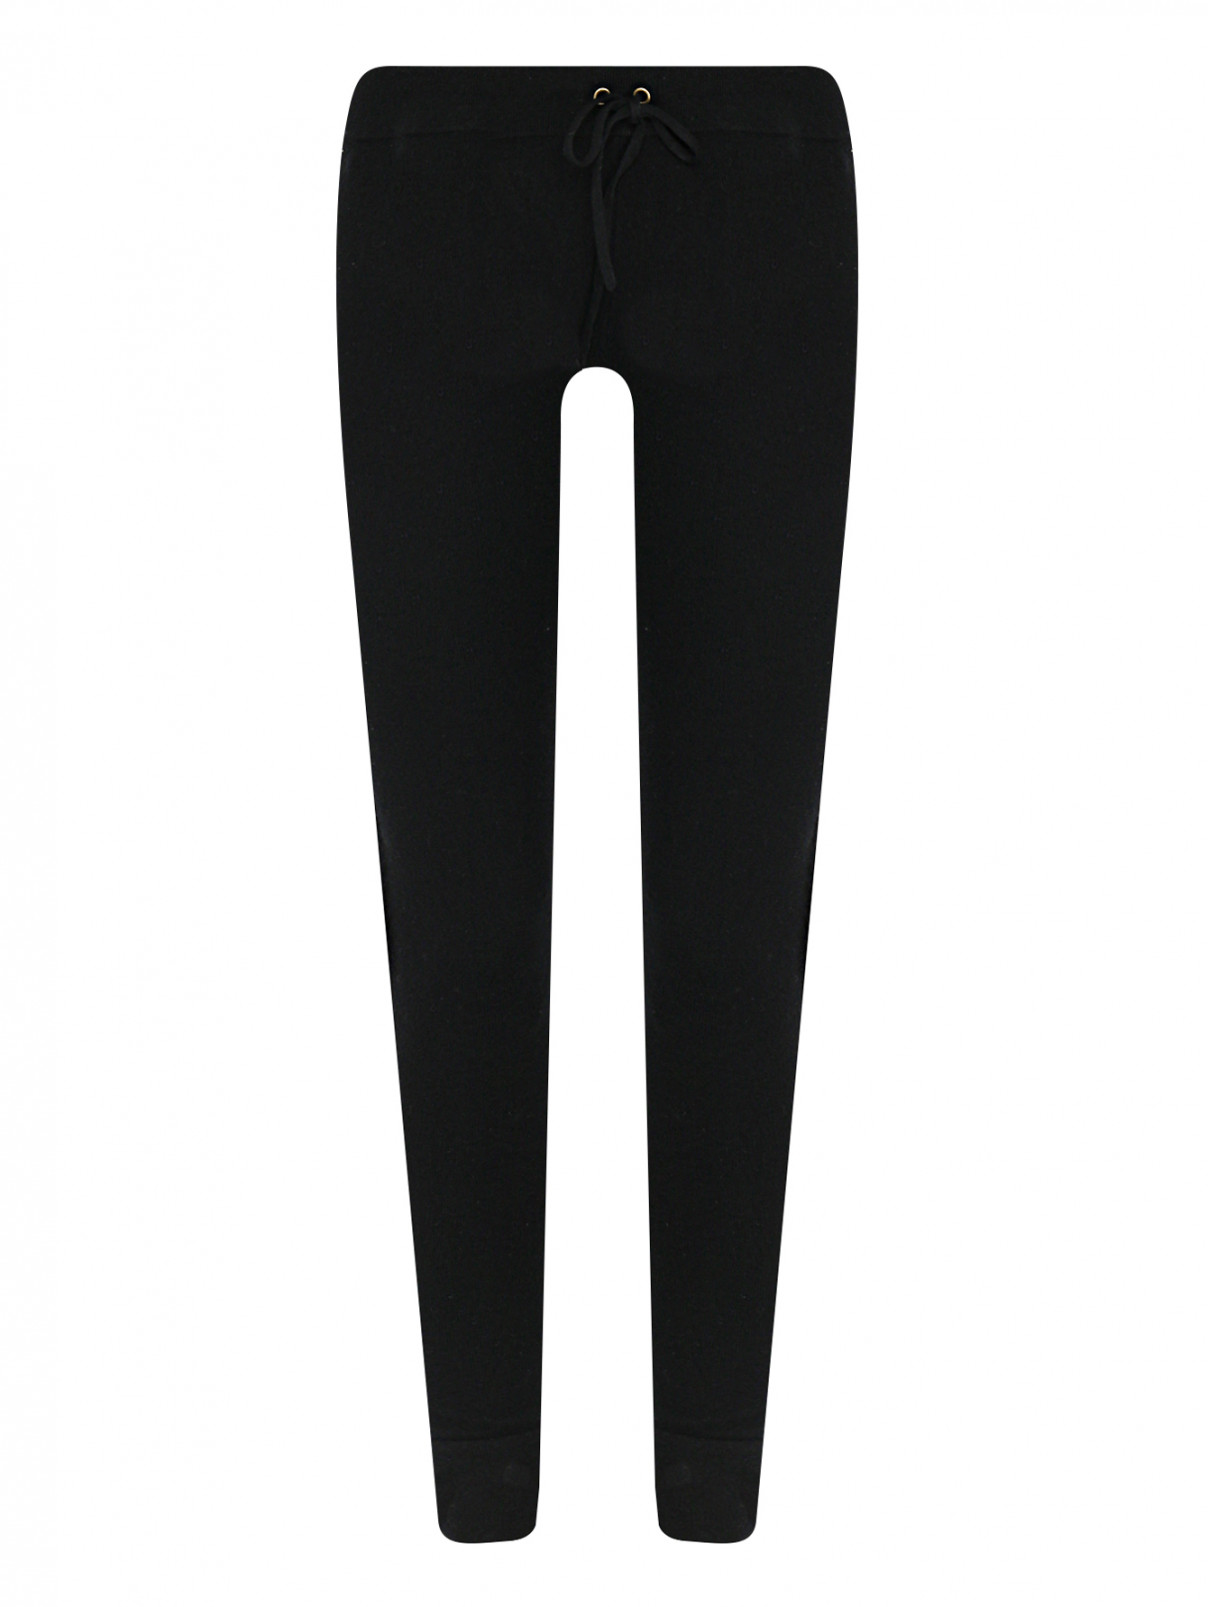 Трикотажные брюки из шерсти и кашемира на резинке Brown Allan  –  Общий вид  – Цвет:  Черный